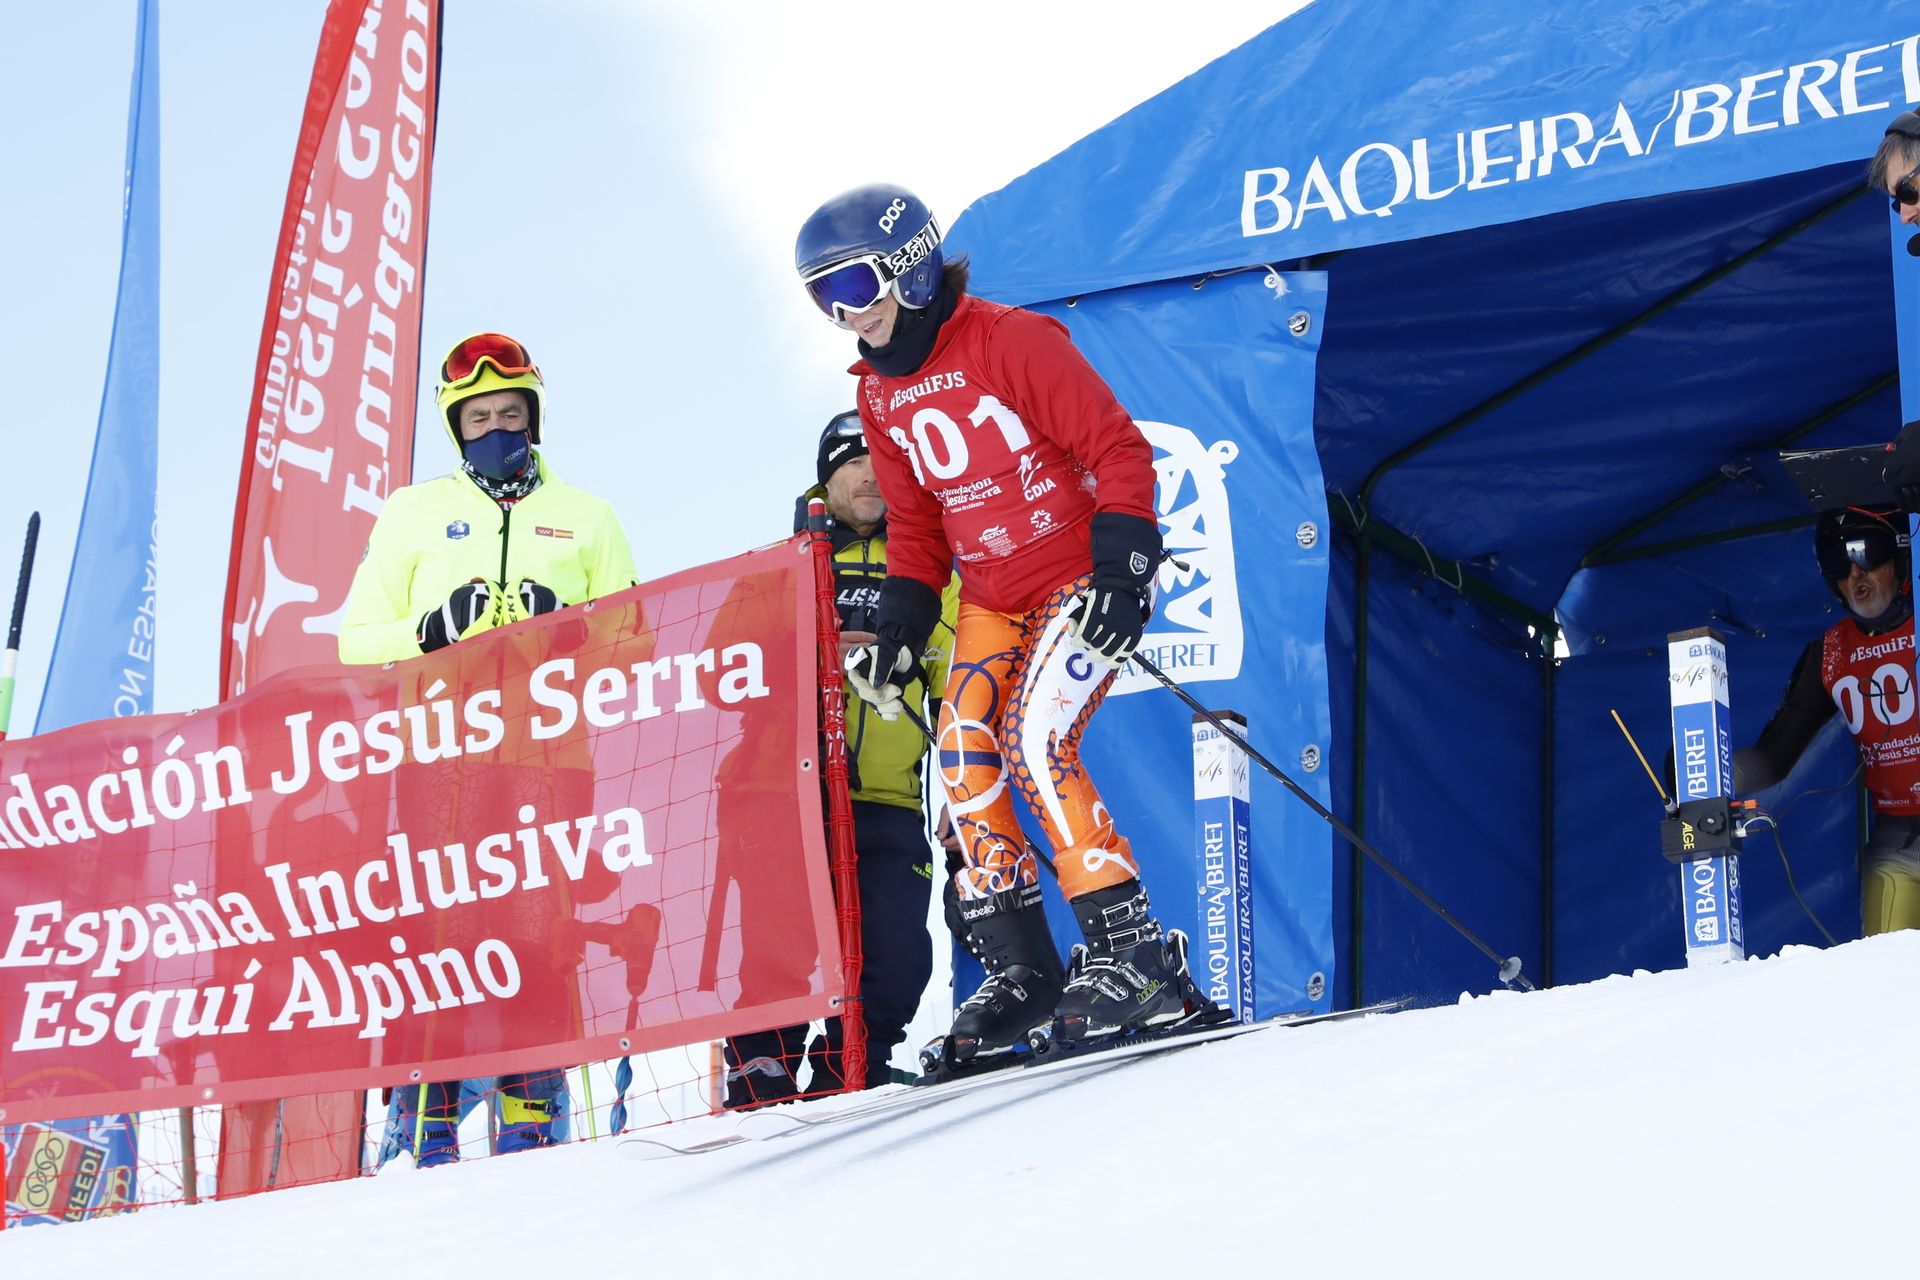 Copa de España esquí inclusivo